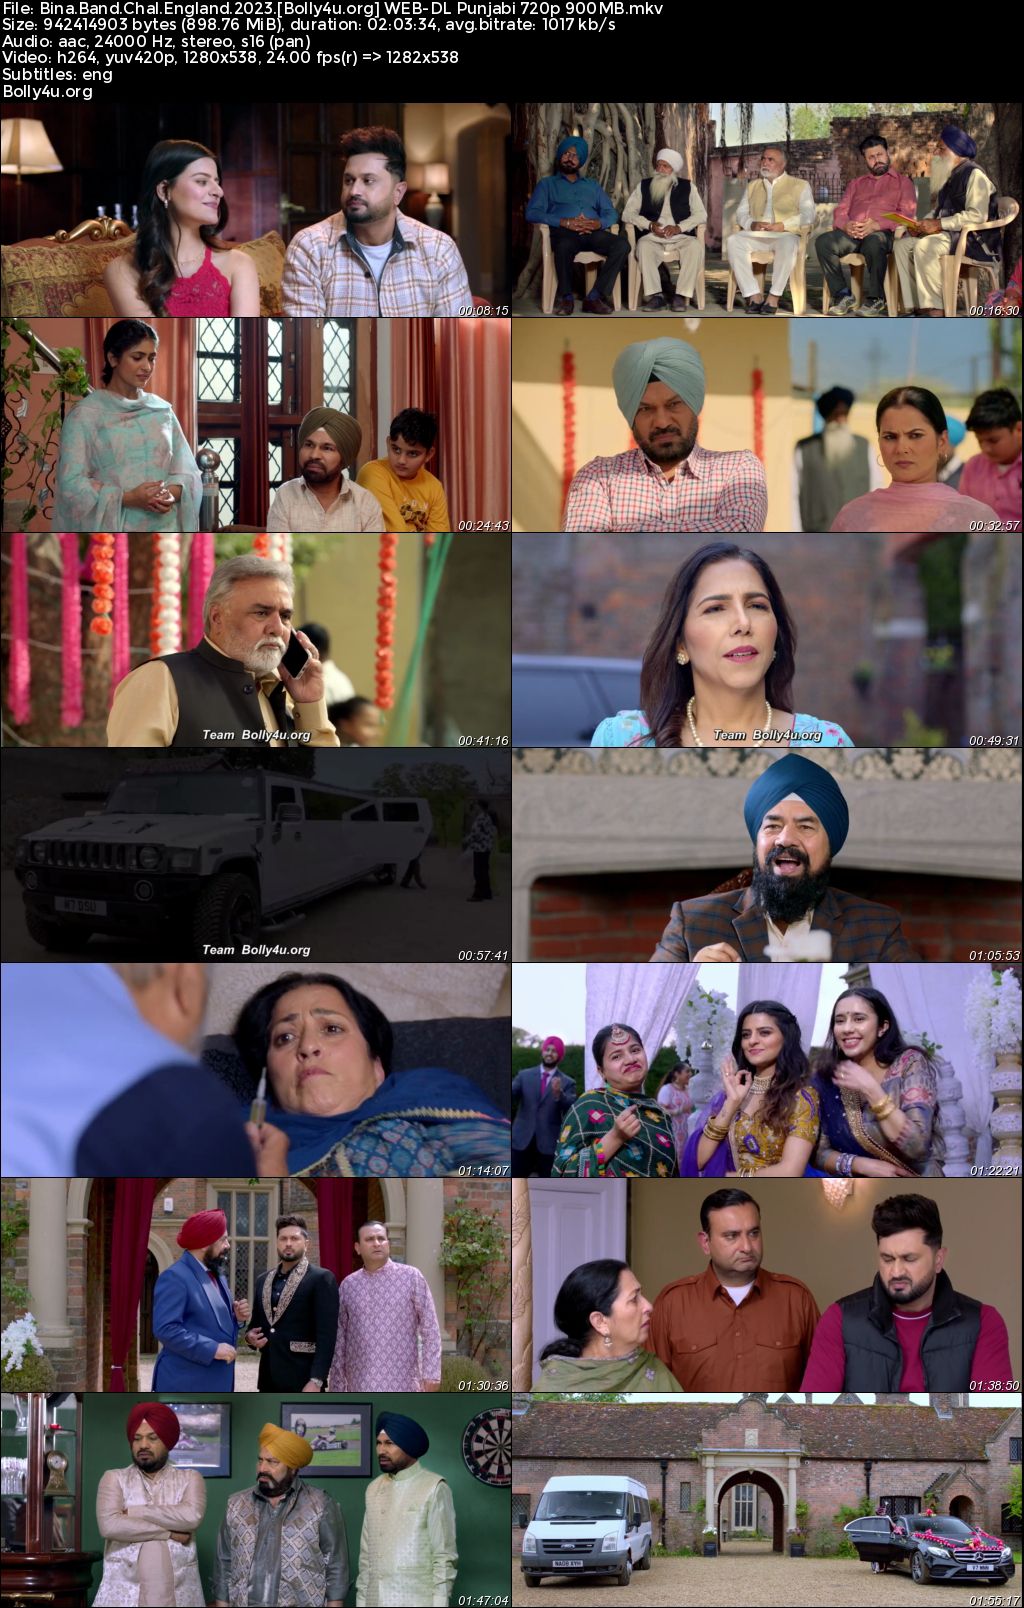 Bina Band Chal England 2023 WEB-DL Punjabi Full Movie Download 1080p 720p 480p